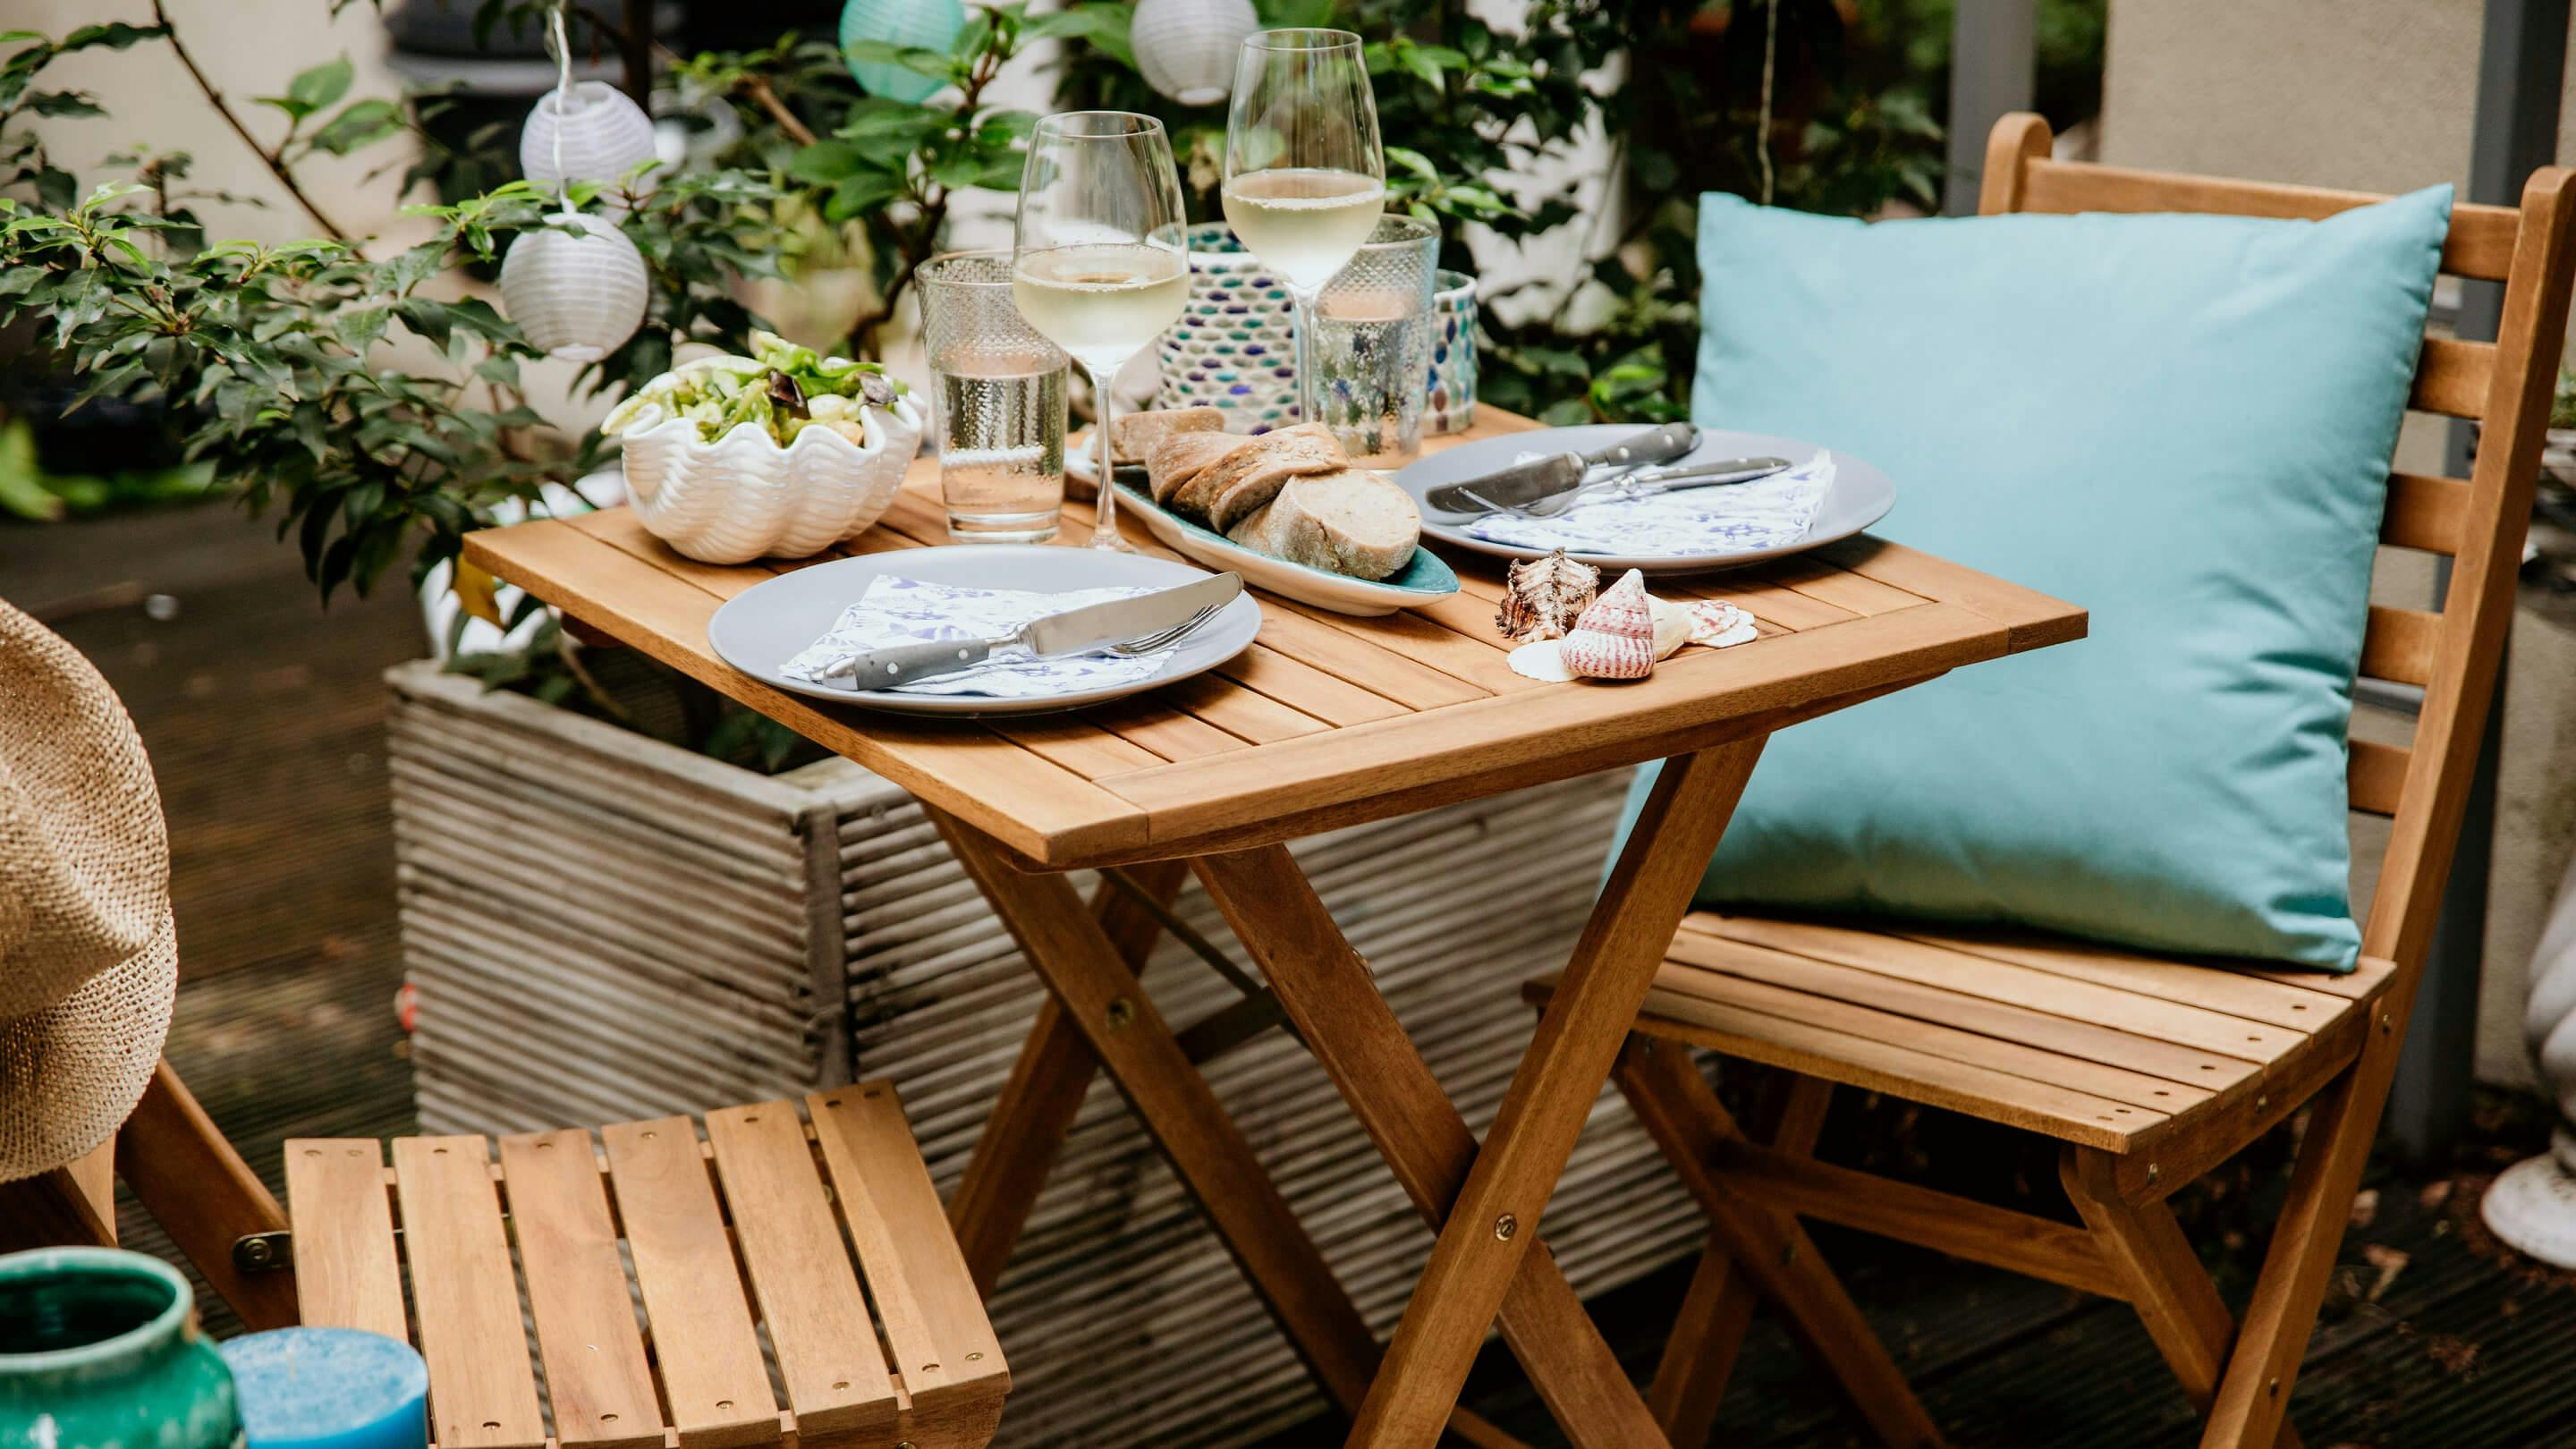 Gartentisch-Set aus Massivholz: 2 Klappstühle, 1 gedeckter Tisch mit u.a. gefüllten Weißweingläsern, etc. (Marke: Butlers).